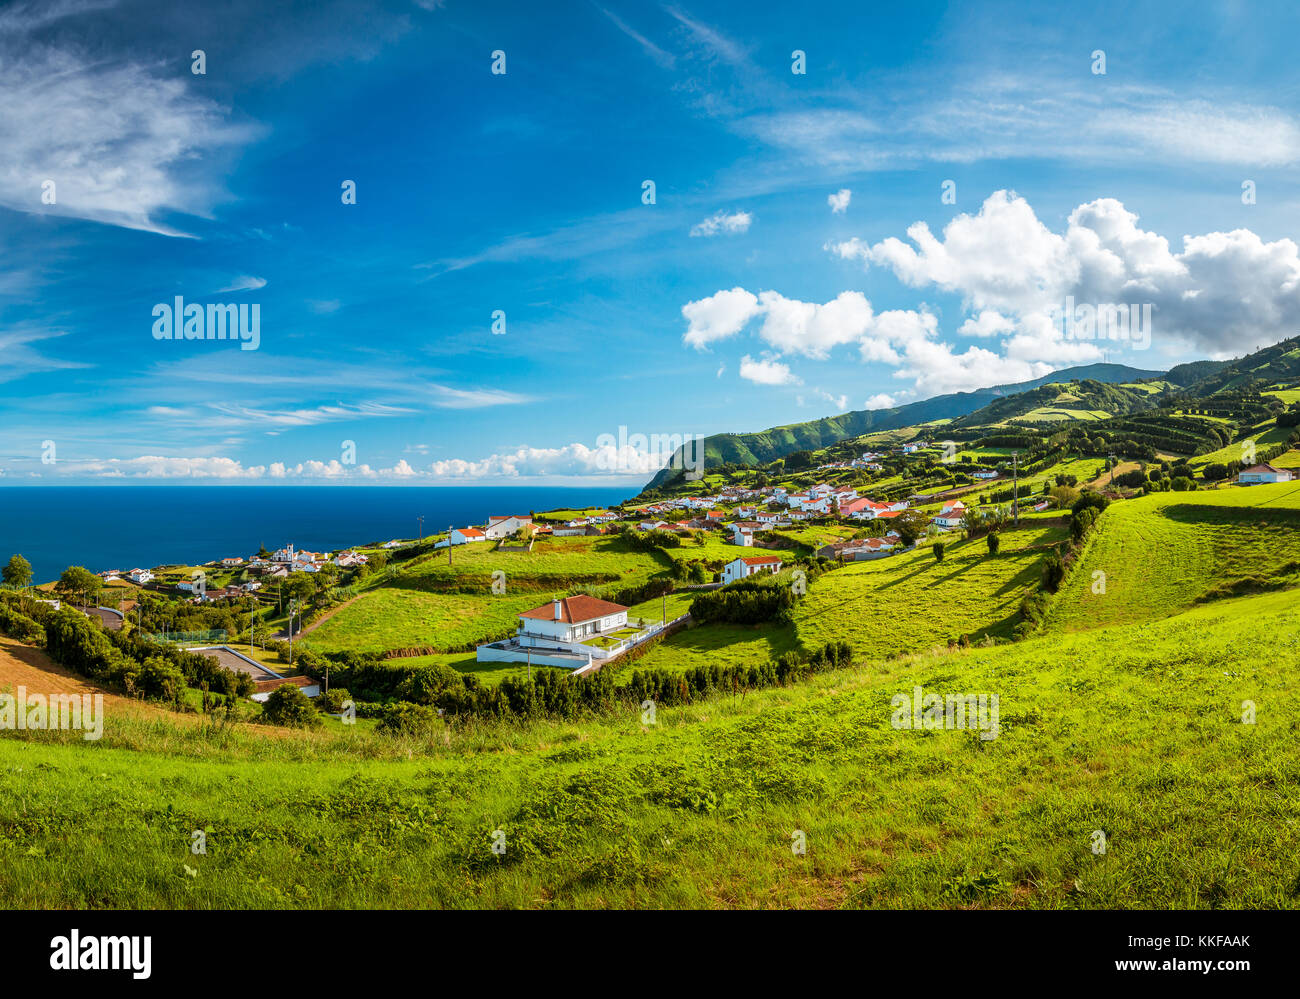 Belle vue sur les collines vertes, les prairies et les montagnes de l'île de São Miguel dans Açores, Portugal Banque D'Images